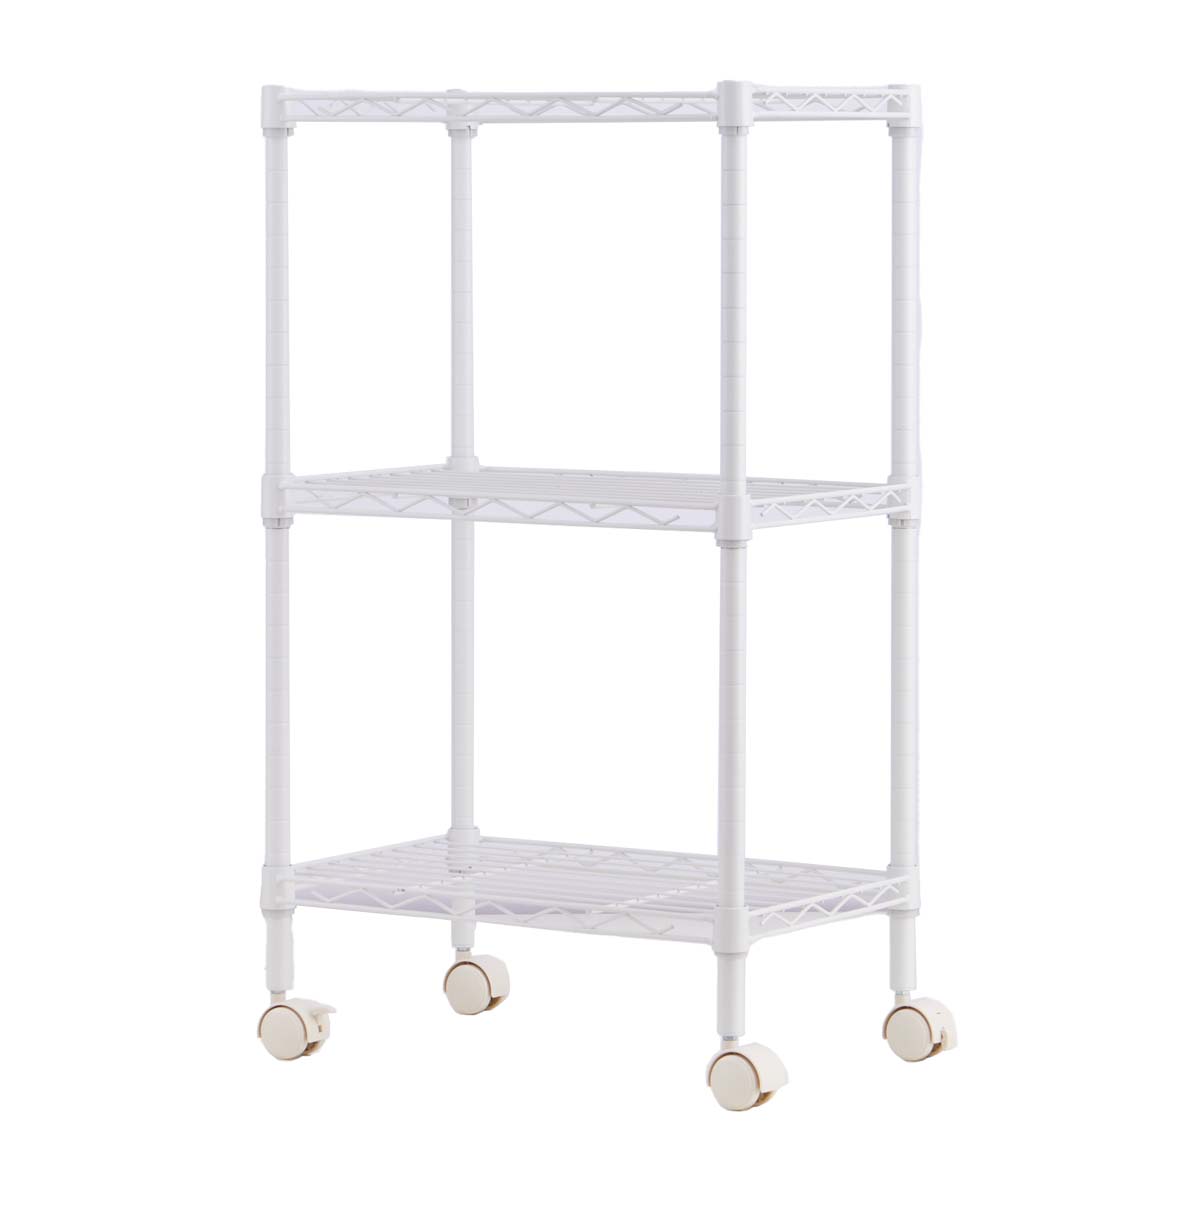 3-Tier Metal Display Shelves / Metal Storage Shelves with Wheels / Steel Wire Rack Shelving